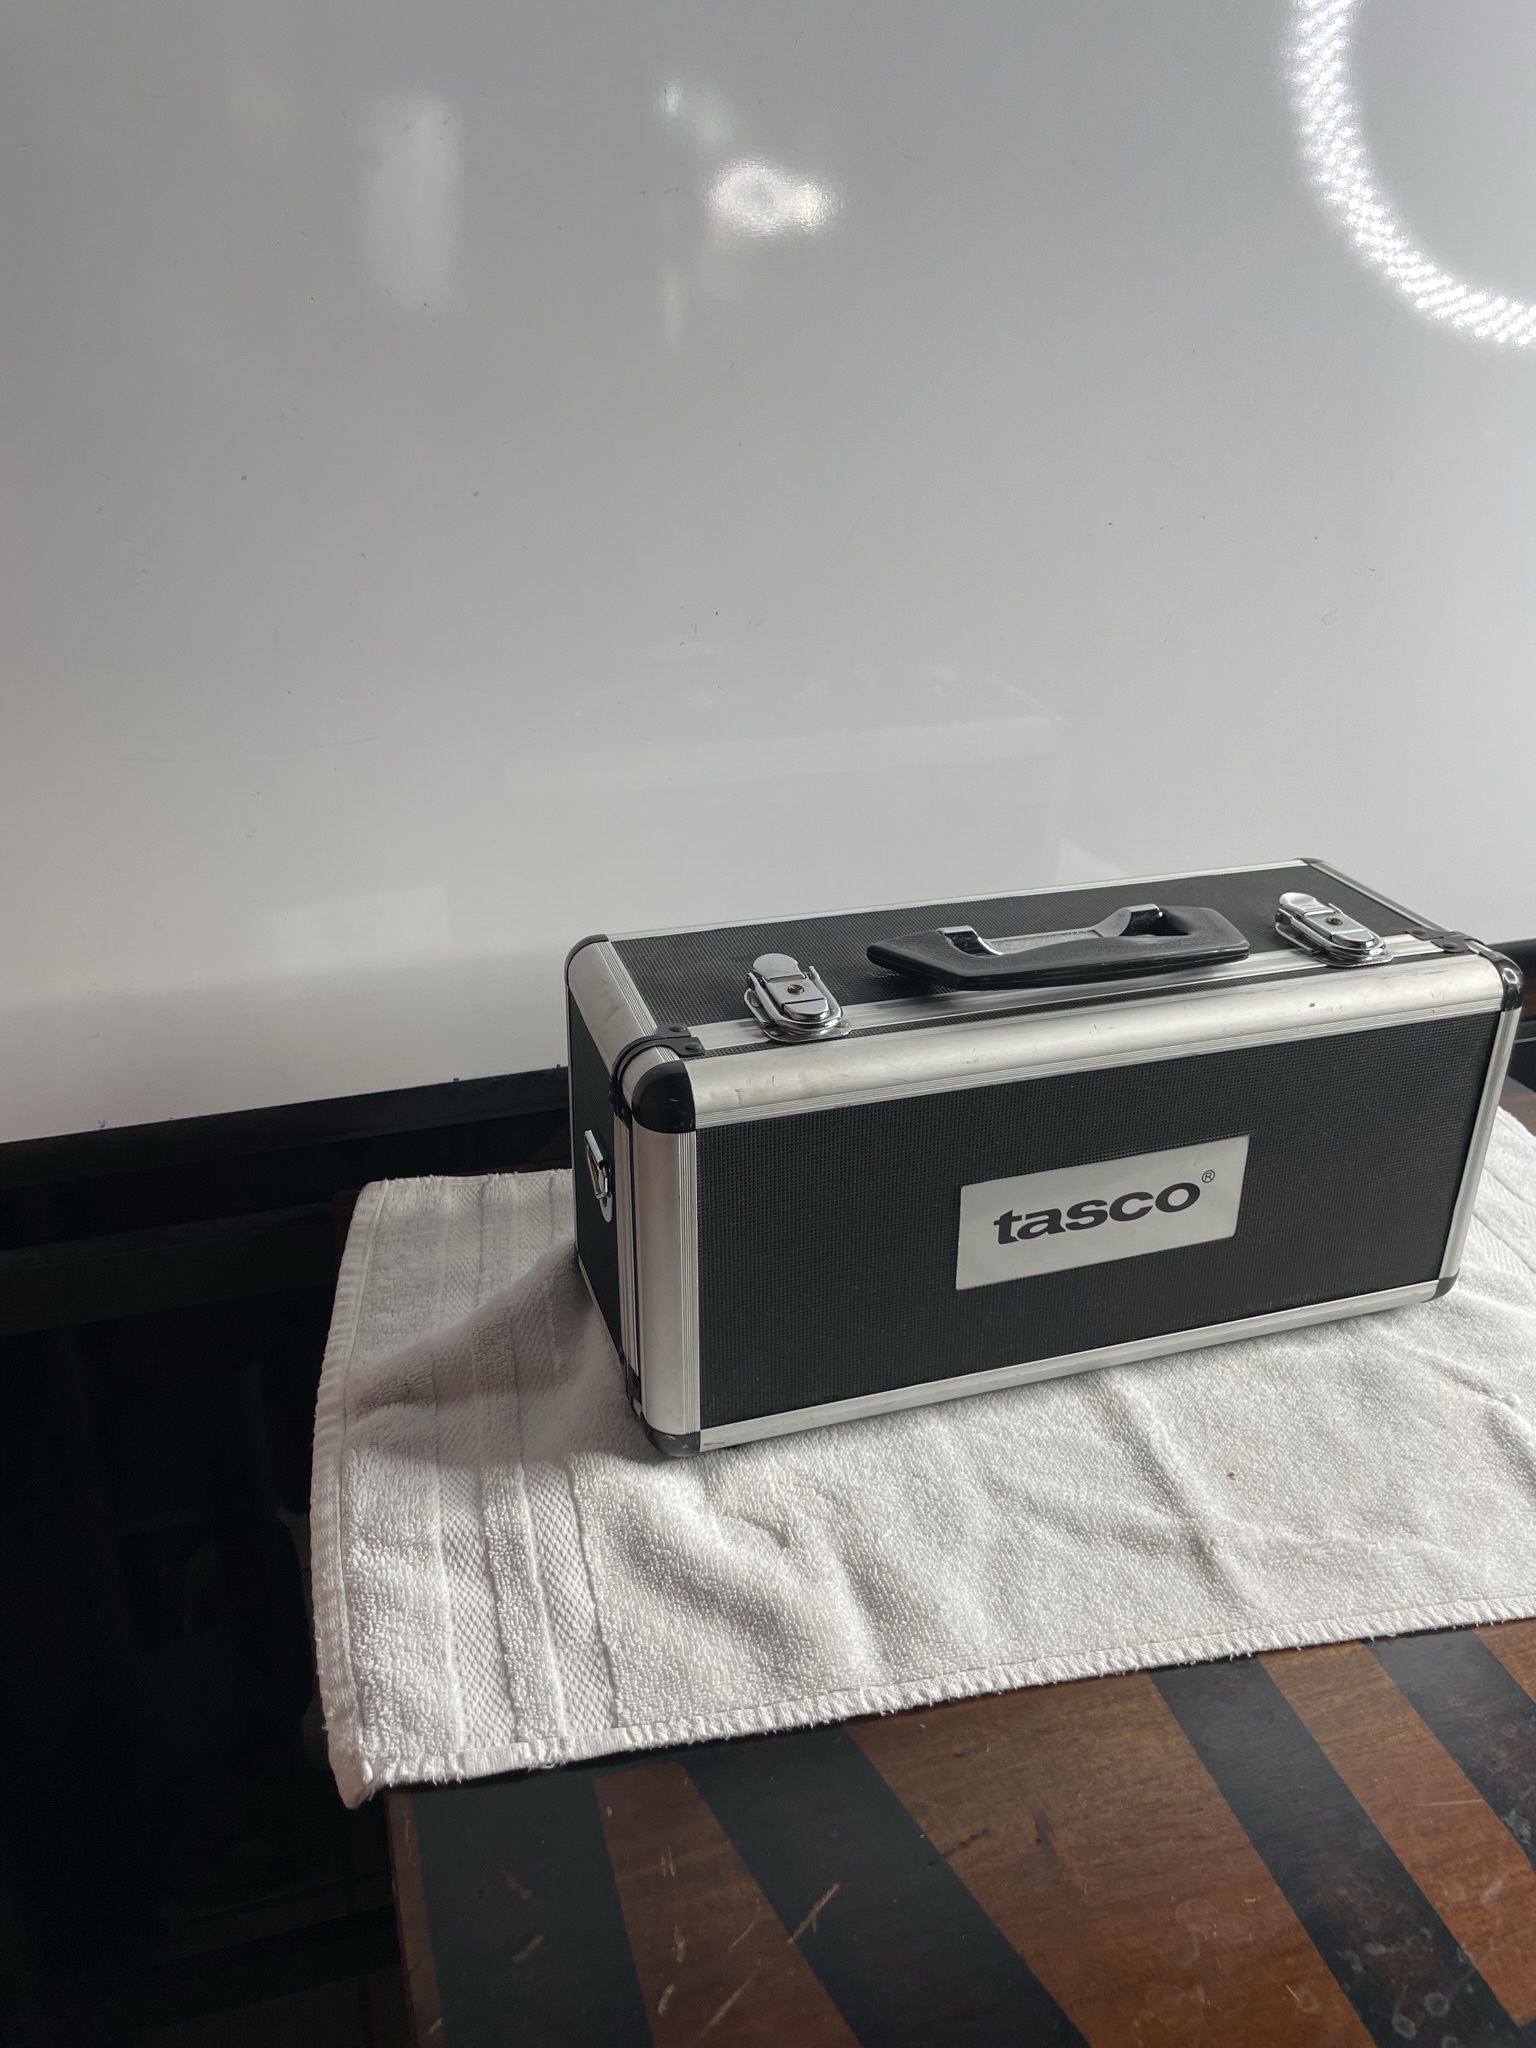 “Tasco” Camera Case